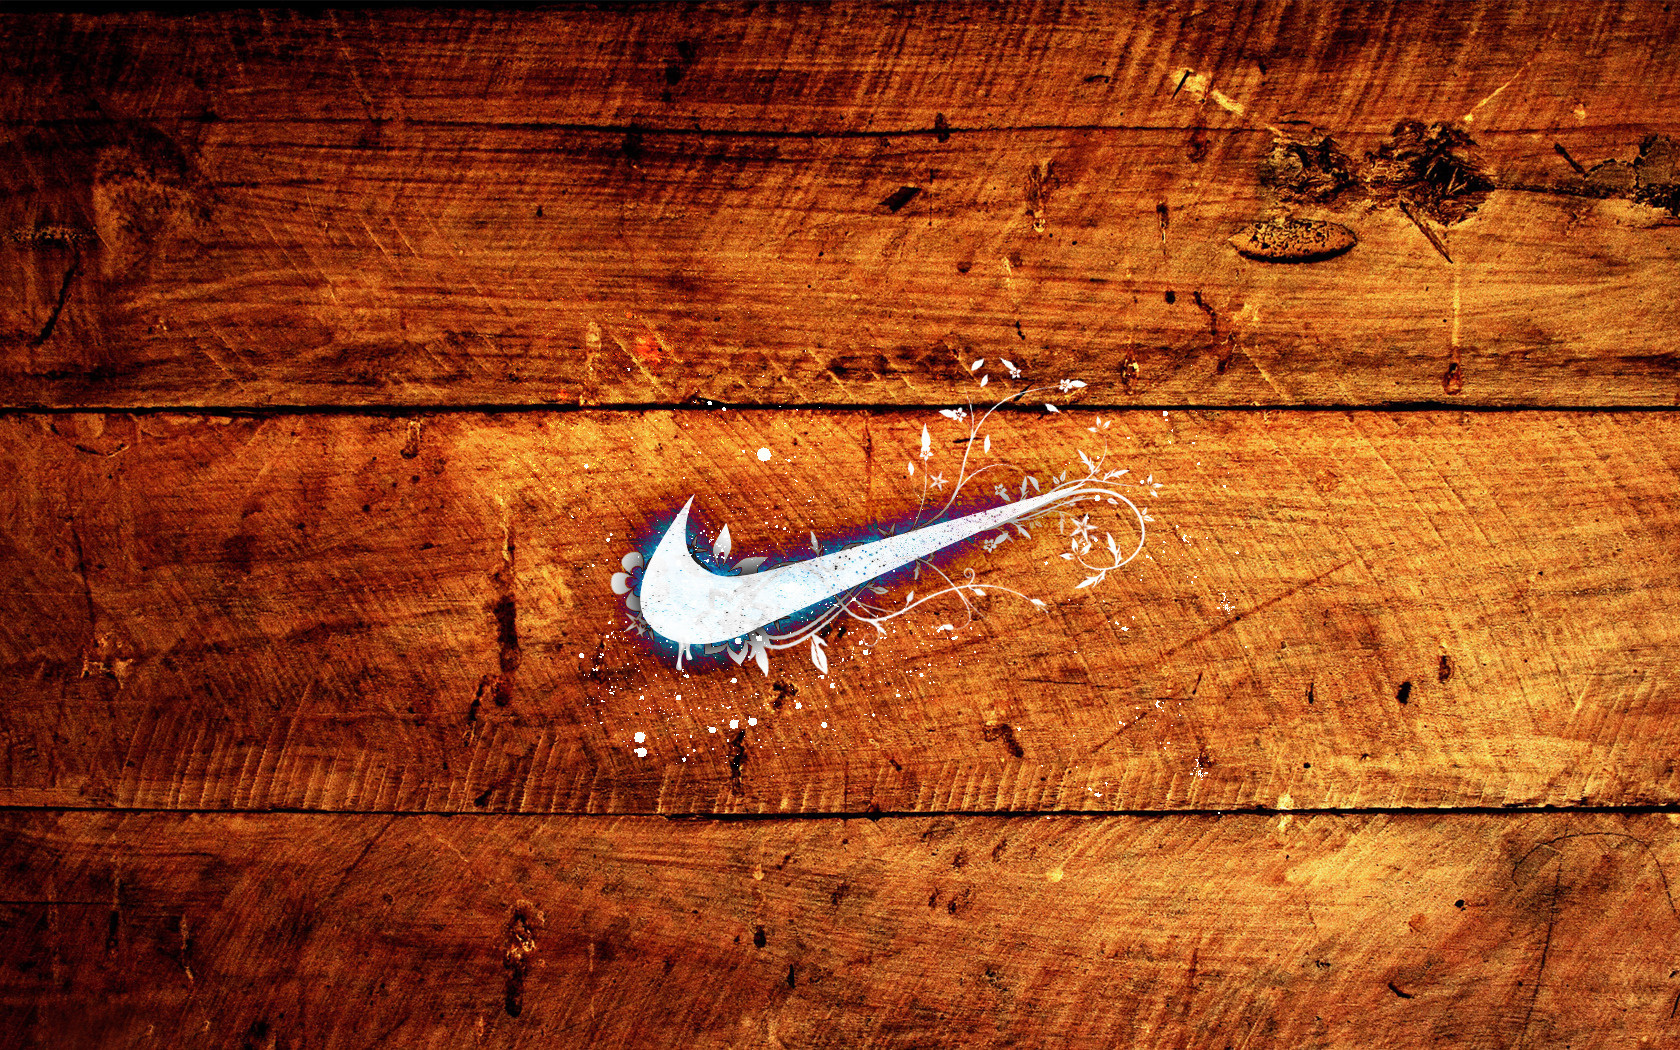 Nike Logo Wallpapers HD 2015 free download | PixelsTalk.Net